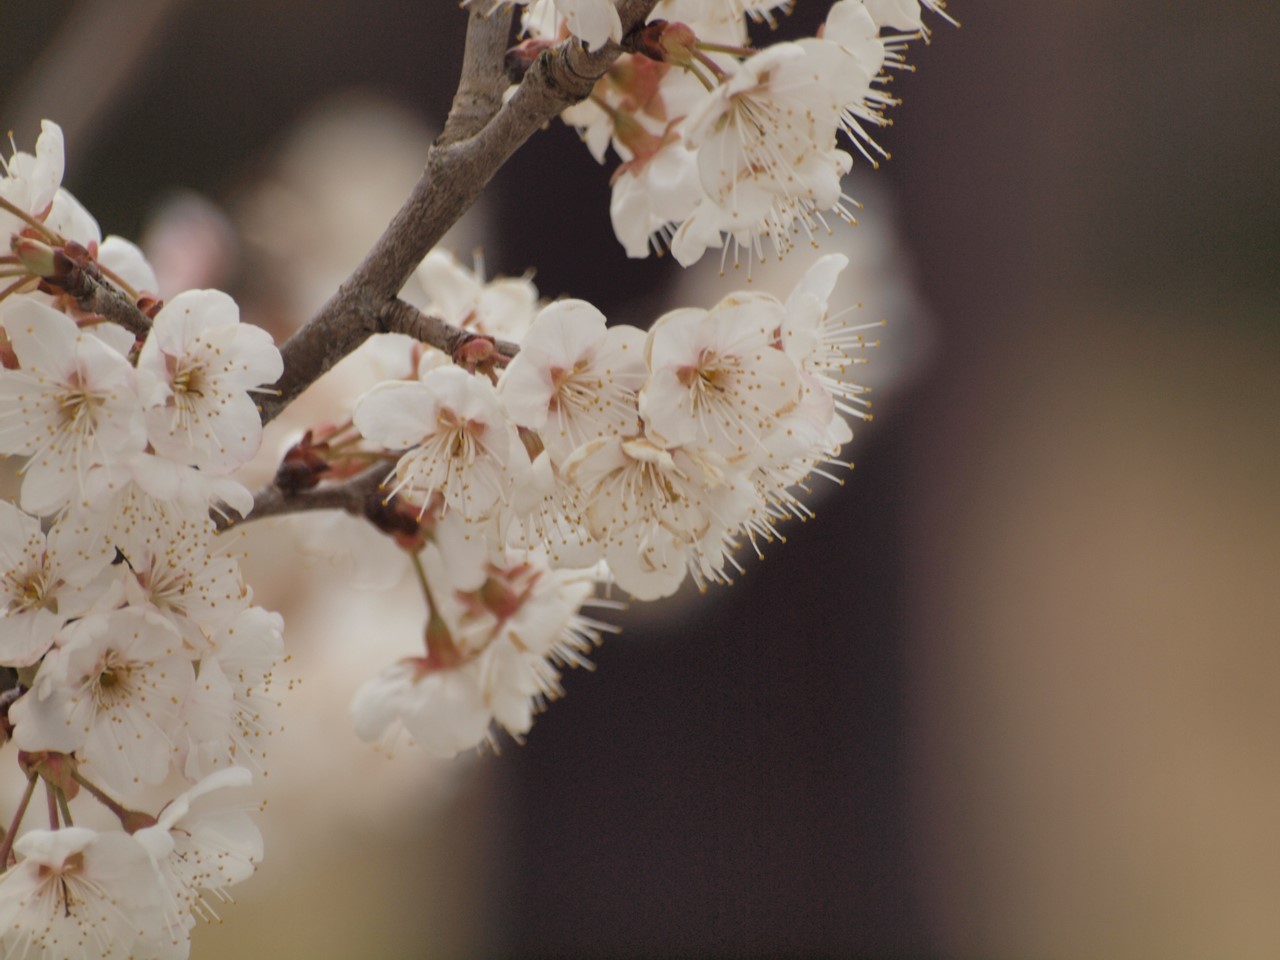 紅葉李 ベニバスモモ と西洋実桜 セイヨウミザクラ と杏 アンズ の花達 自然風の自然風だより